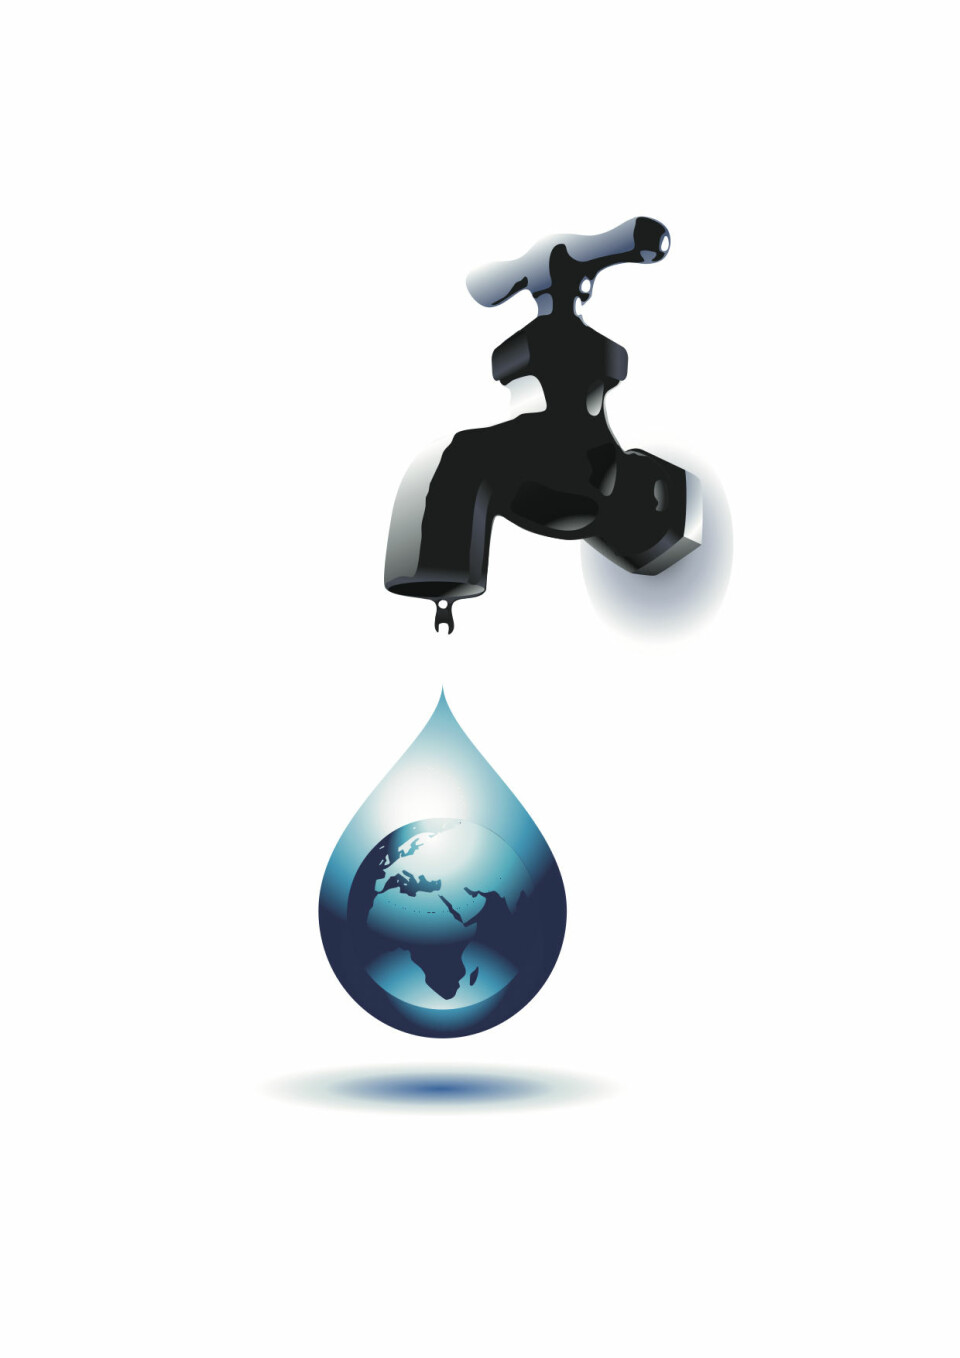 Rent vann er en knapp ressurs mange steder i Afrika. (Illustrasjon: Shutterstock)